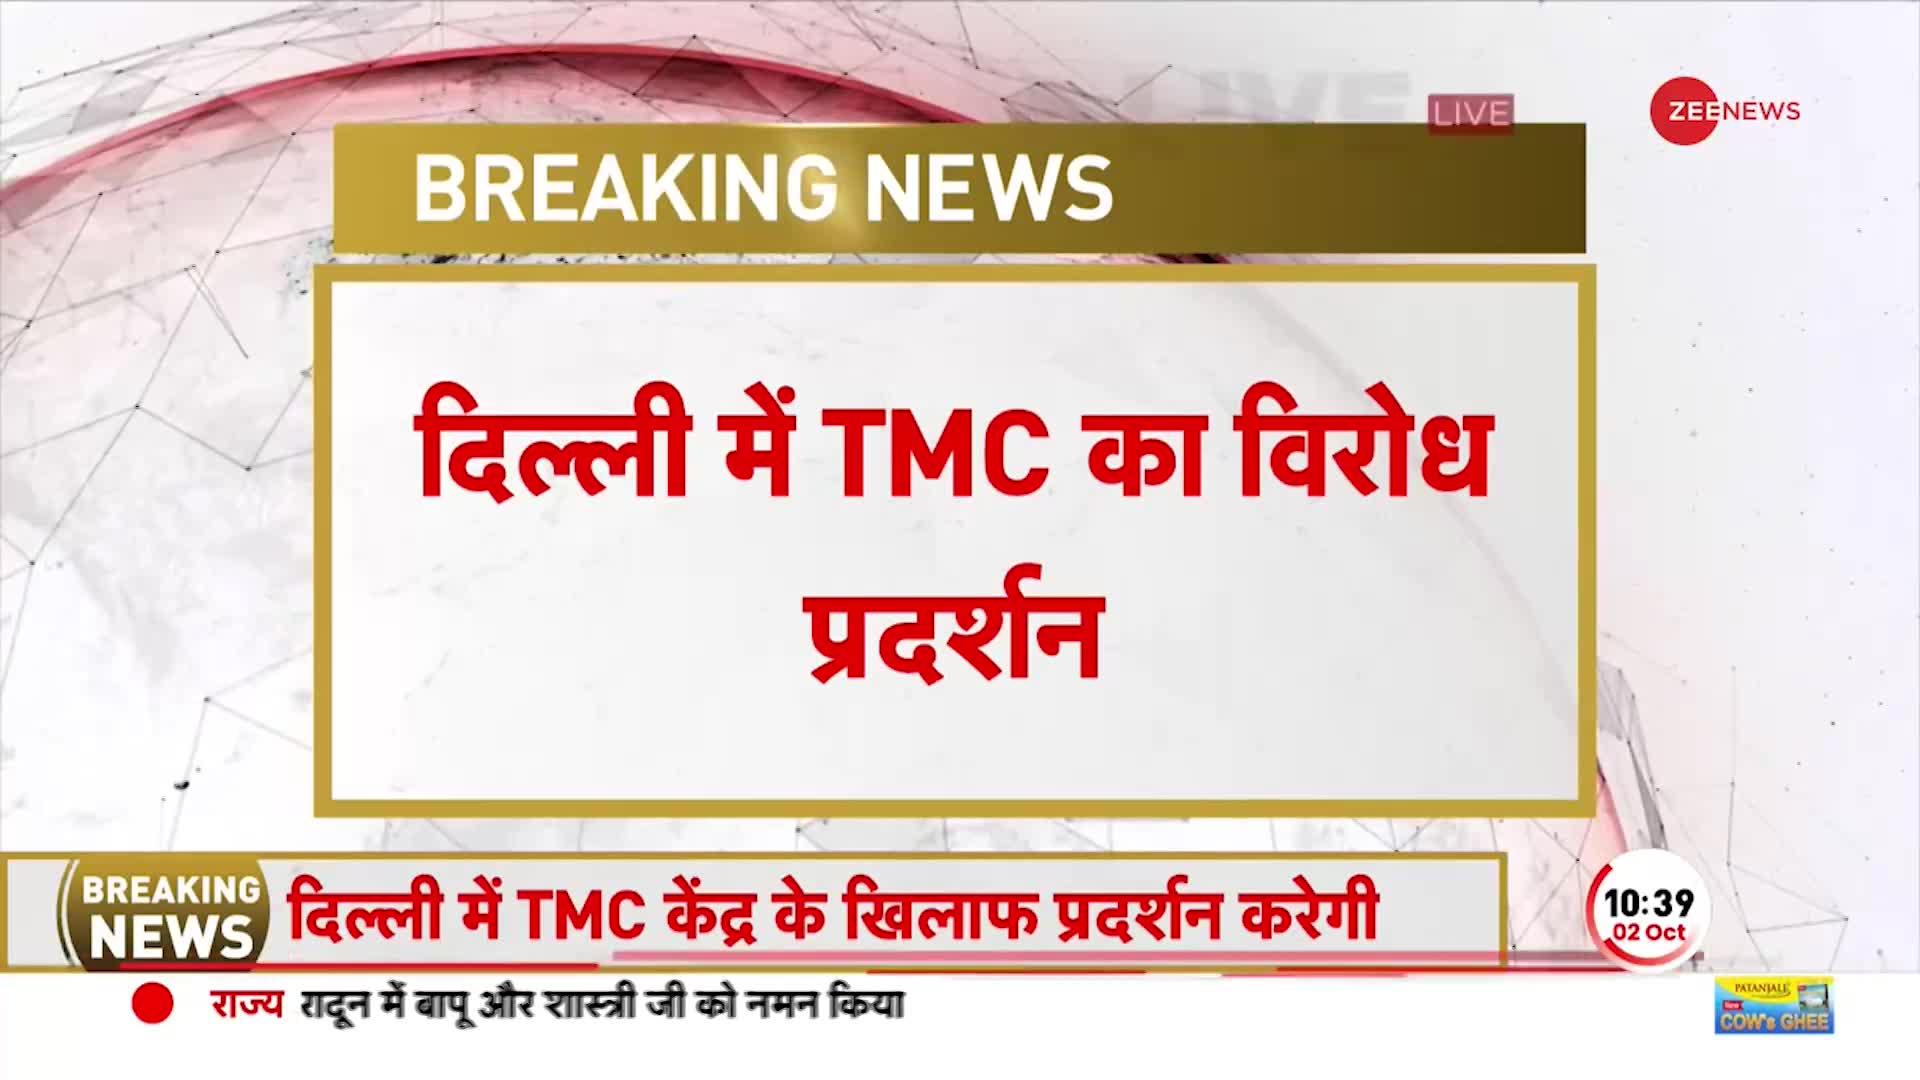 BREAKING: MNREGA Fund की मांग को लेकर आज दिल्ली में TMC का प्रदर्शन, मोदी सरकार के फैसले का विरोध